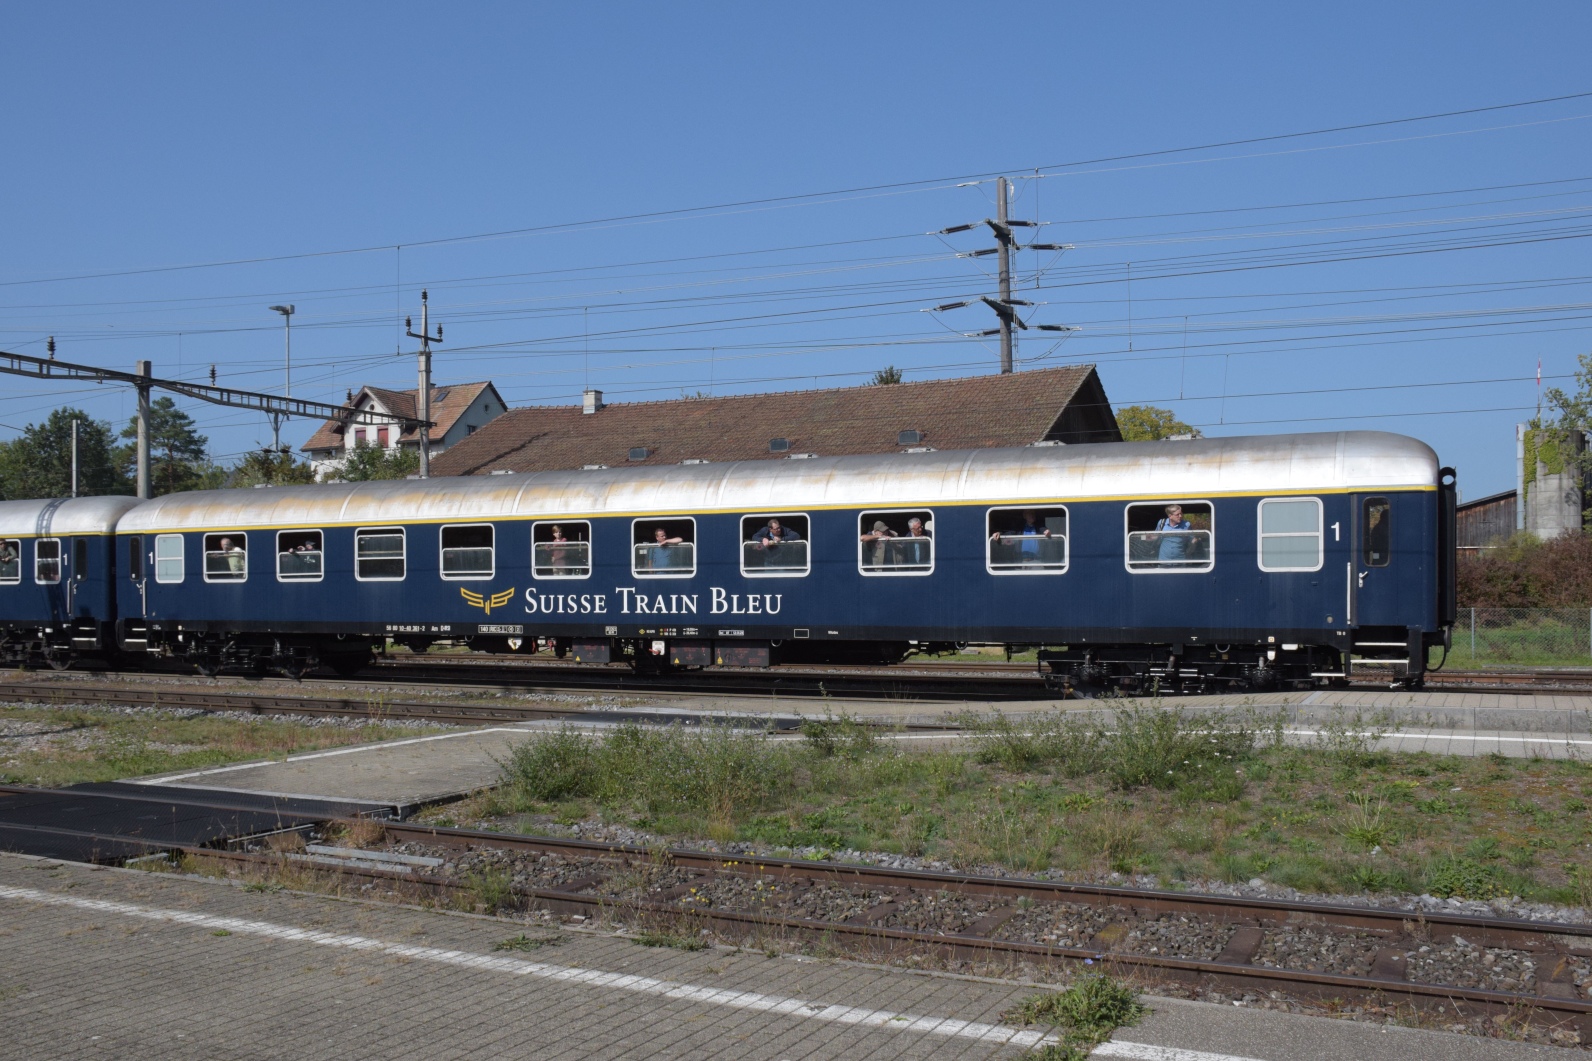 A 3/5 auf dem Schweizer Bähnle. 

Re 4/4 II 11393 brachte den Zug rückwärts in Abfahrposition. Der Swiss Train Bleu erst mal auf dem Präsentierteller. Hier der Erstklasswagen Am 56 80 10-40 361-2 D-IRSI. Etzwilen, September 2023.